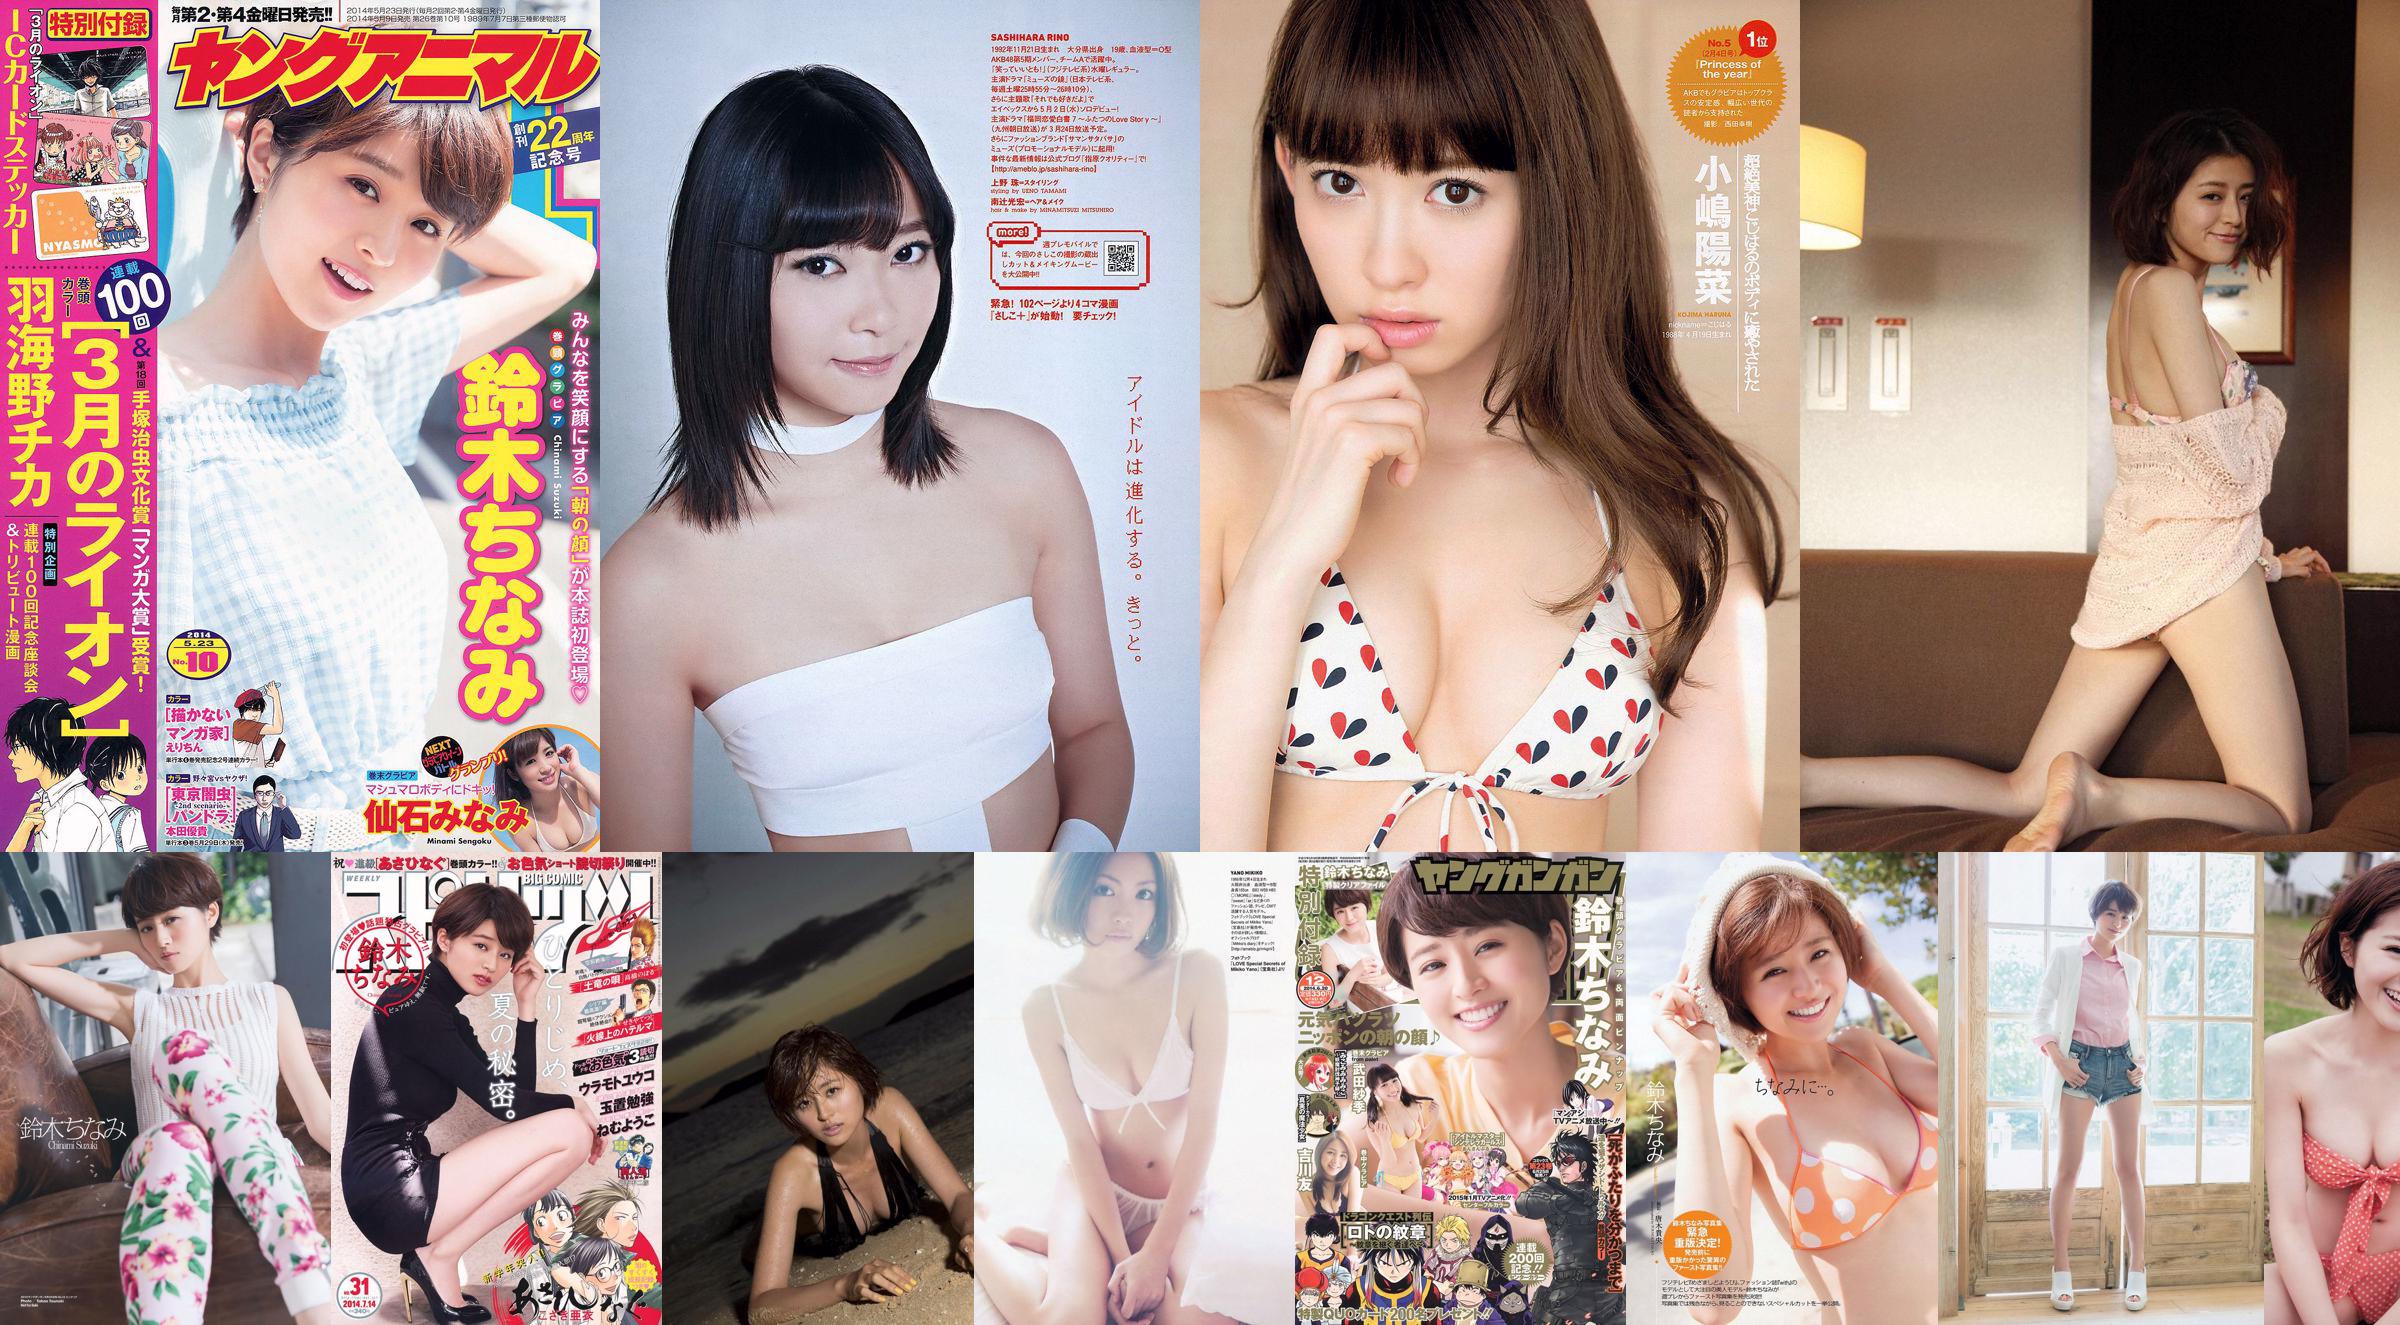 Chinami Suzuki Yua Shinkawa Mai Yamagishi Mayu Watanabe Moyoko Sasaki [Playboy Mingguan] 2013 No.18-19 Foto Mori No.ad8f38 Halaman 9